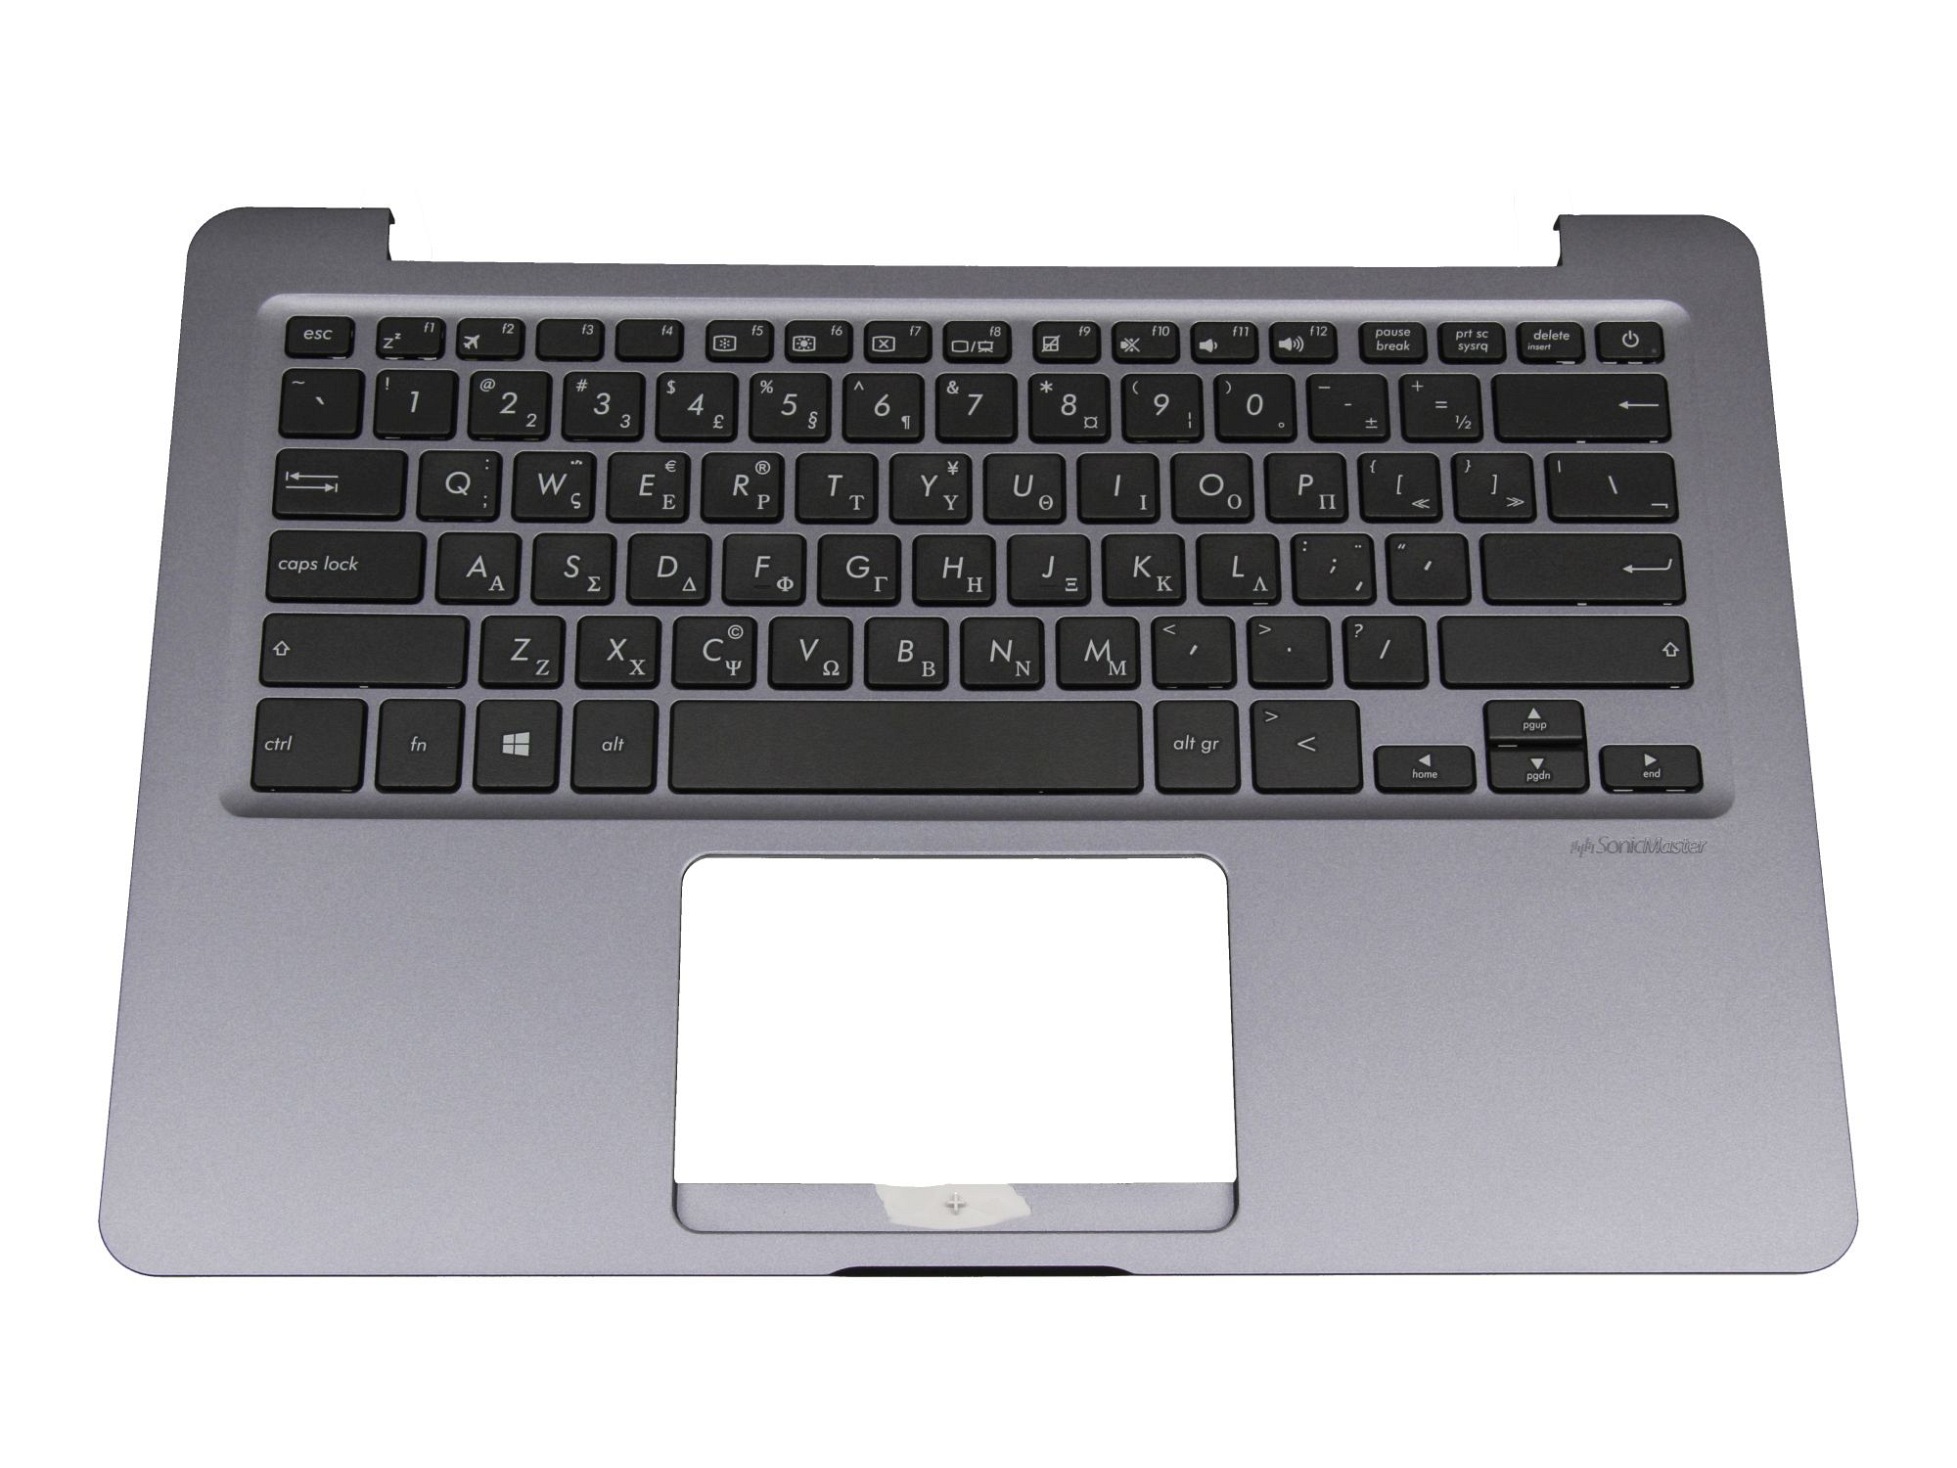 Asus 0KNB0-F125GR00 Tastatur inkl. Topcase GR (griechisch) schwarz/schwarz/silber